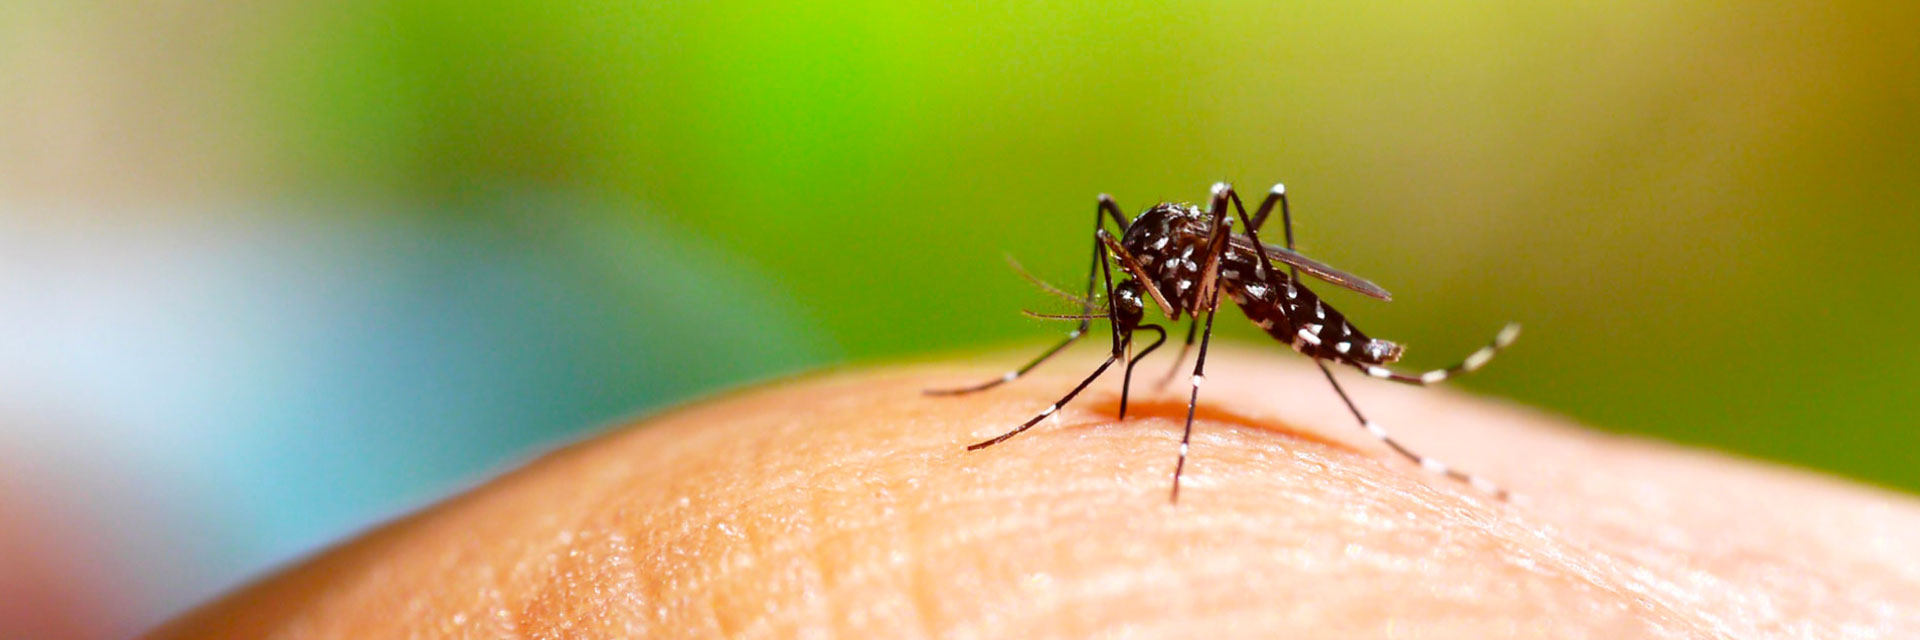 Atenção! Casos de dengue no Brasil voltam a crescer